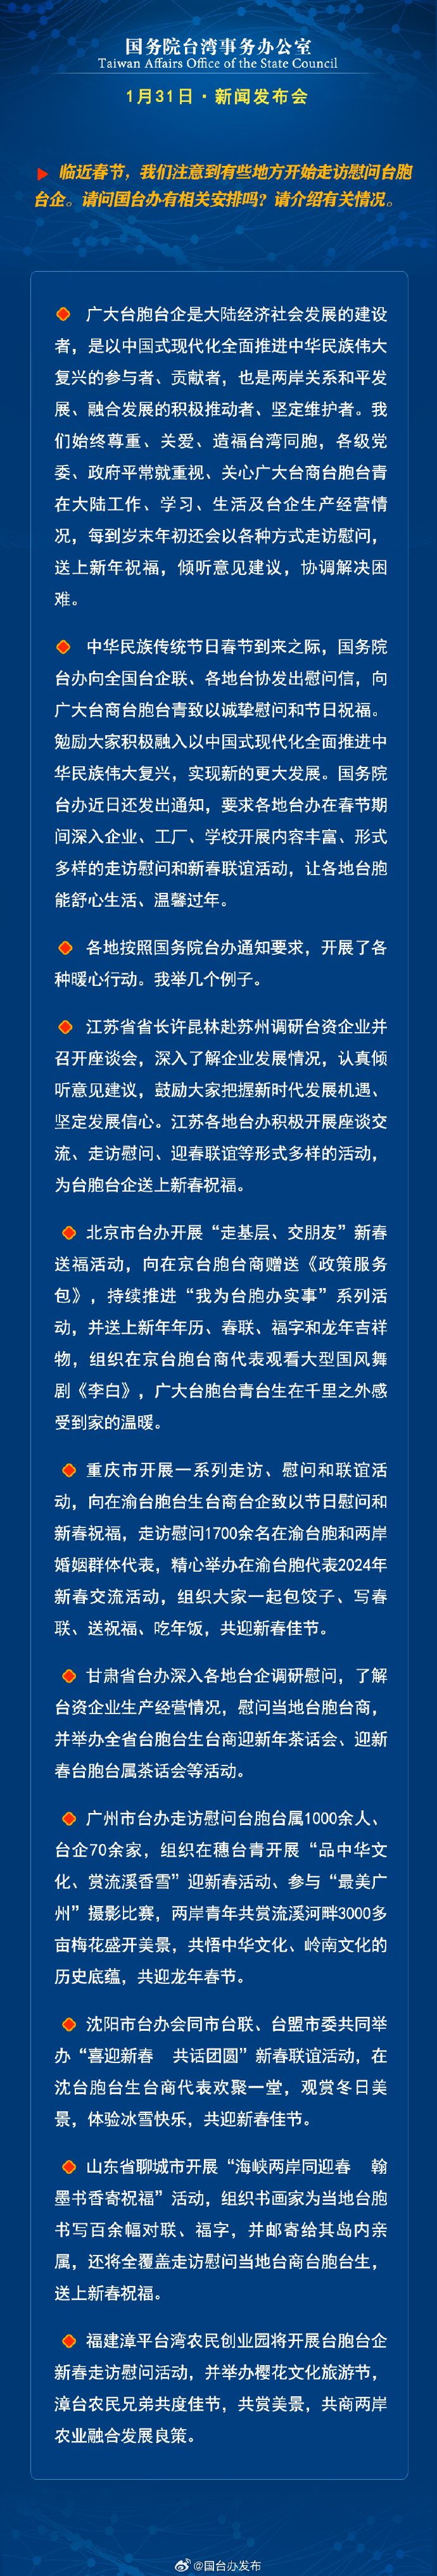 国务院台湾事务办公室1月31日·新闻发布会